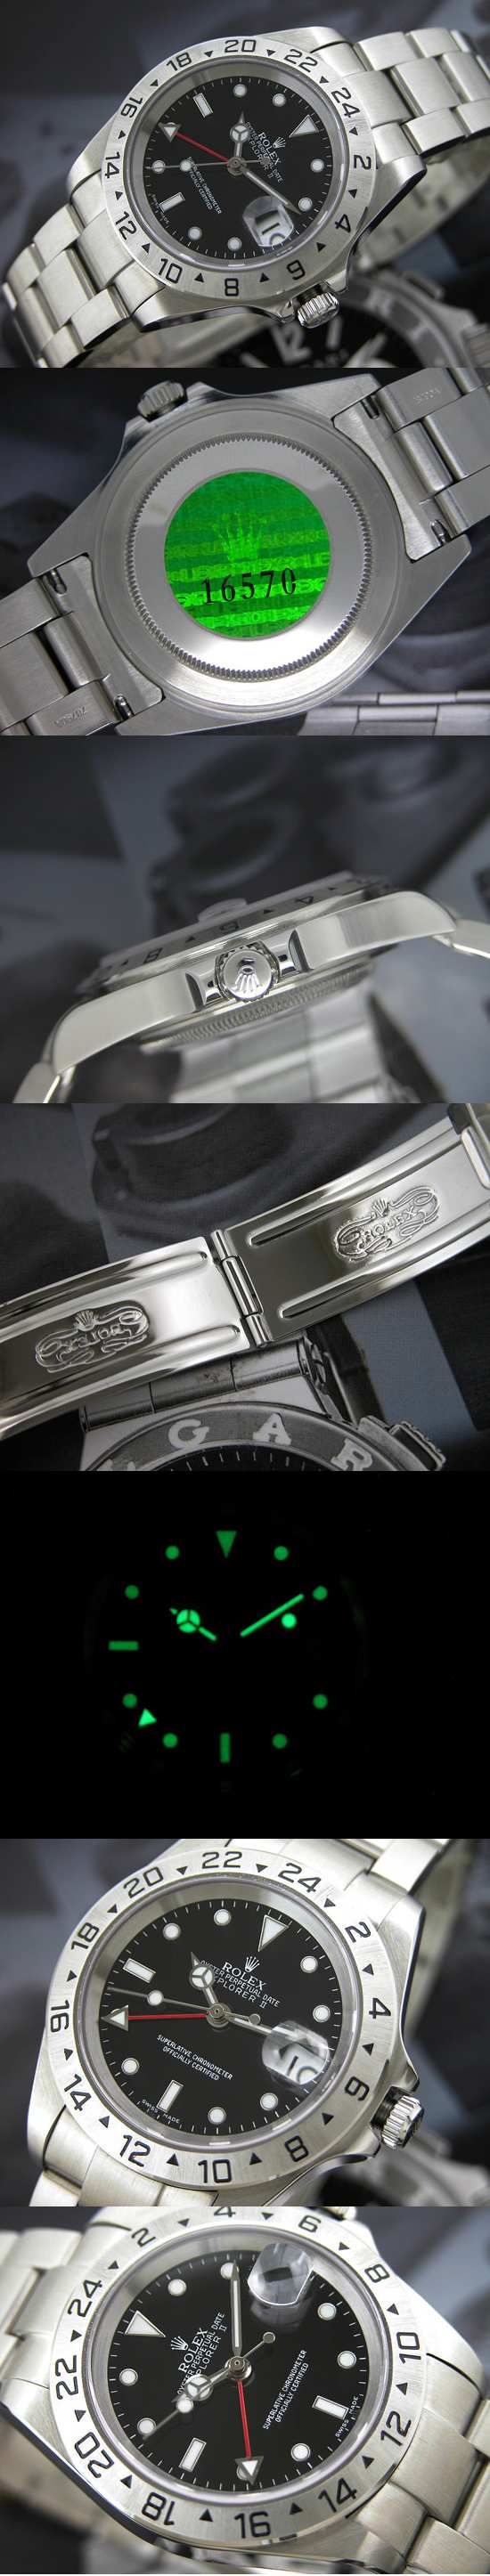 おしゃれなブランド時計がロレックス-サブマリーナ-ROLEX-16610-29-男性用を提供します.